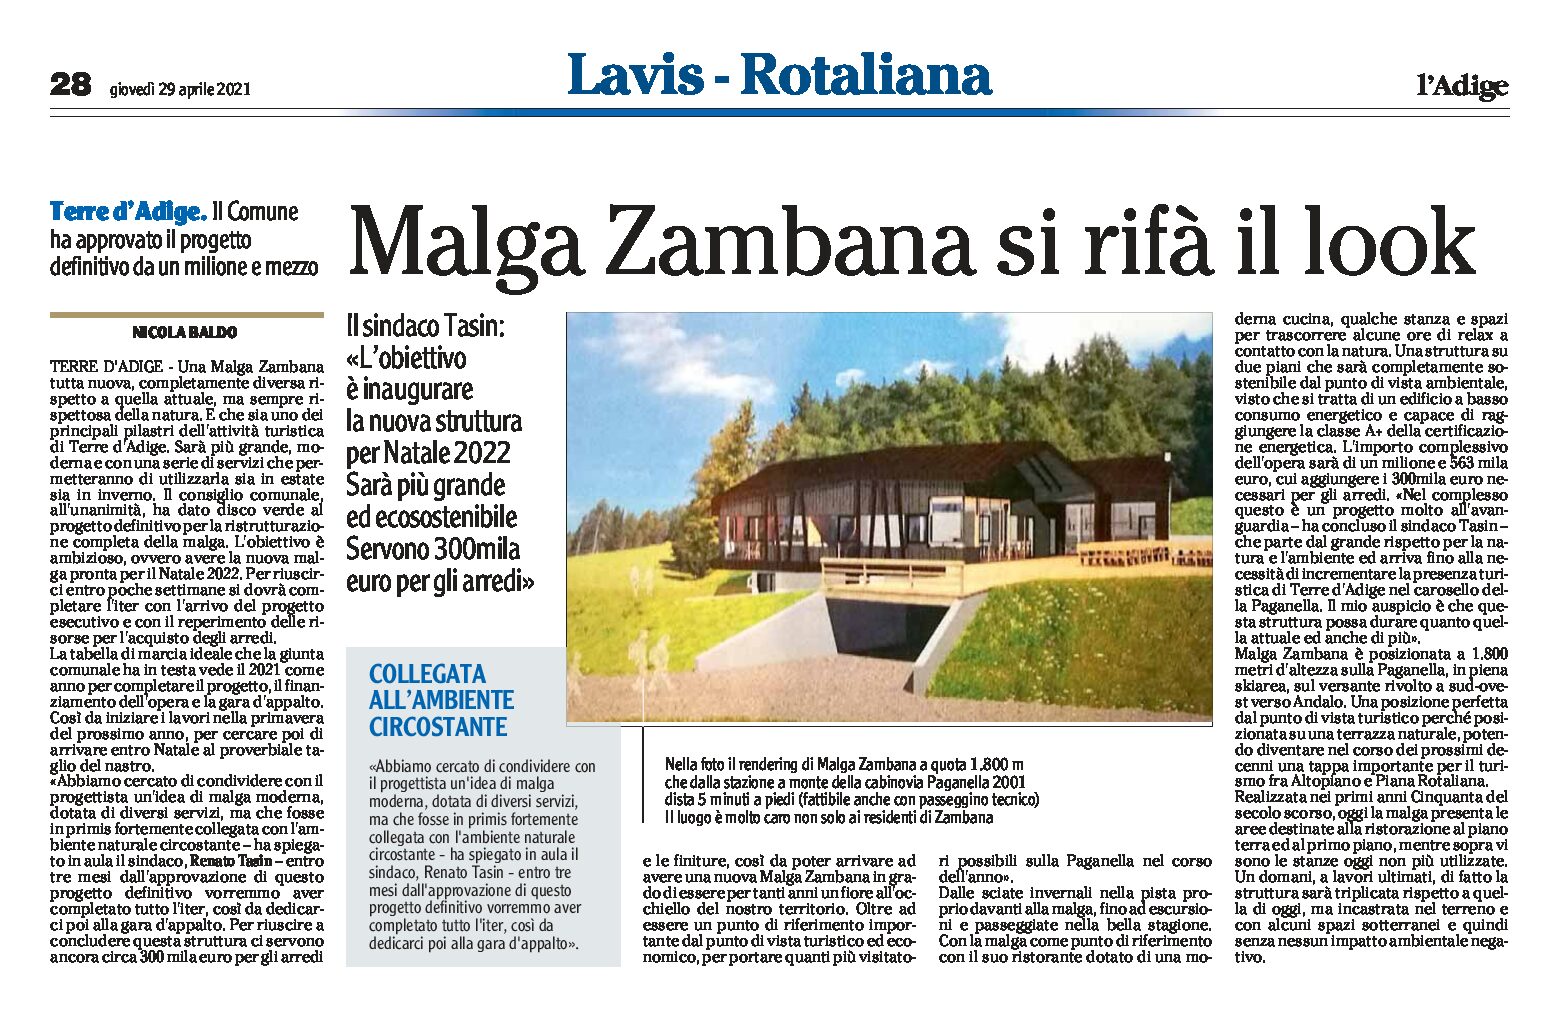 Terre d’Adige: malga Zambana si rifà il look